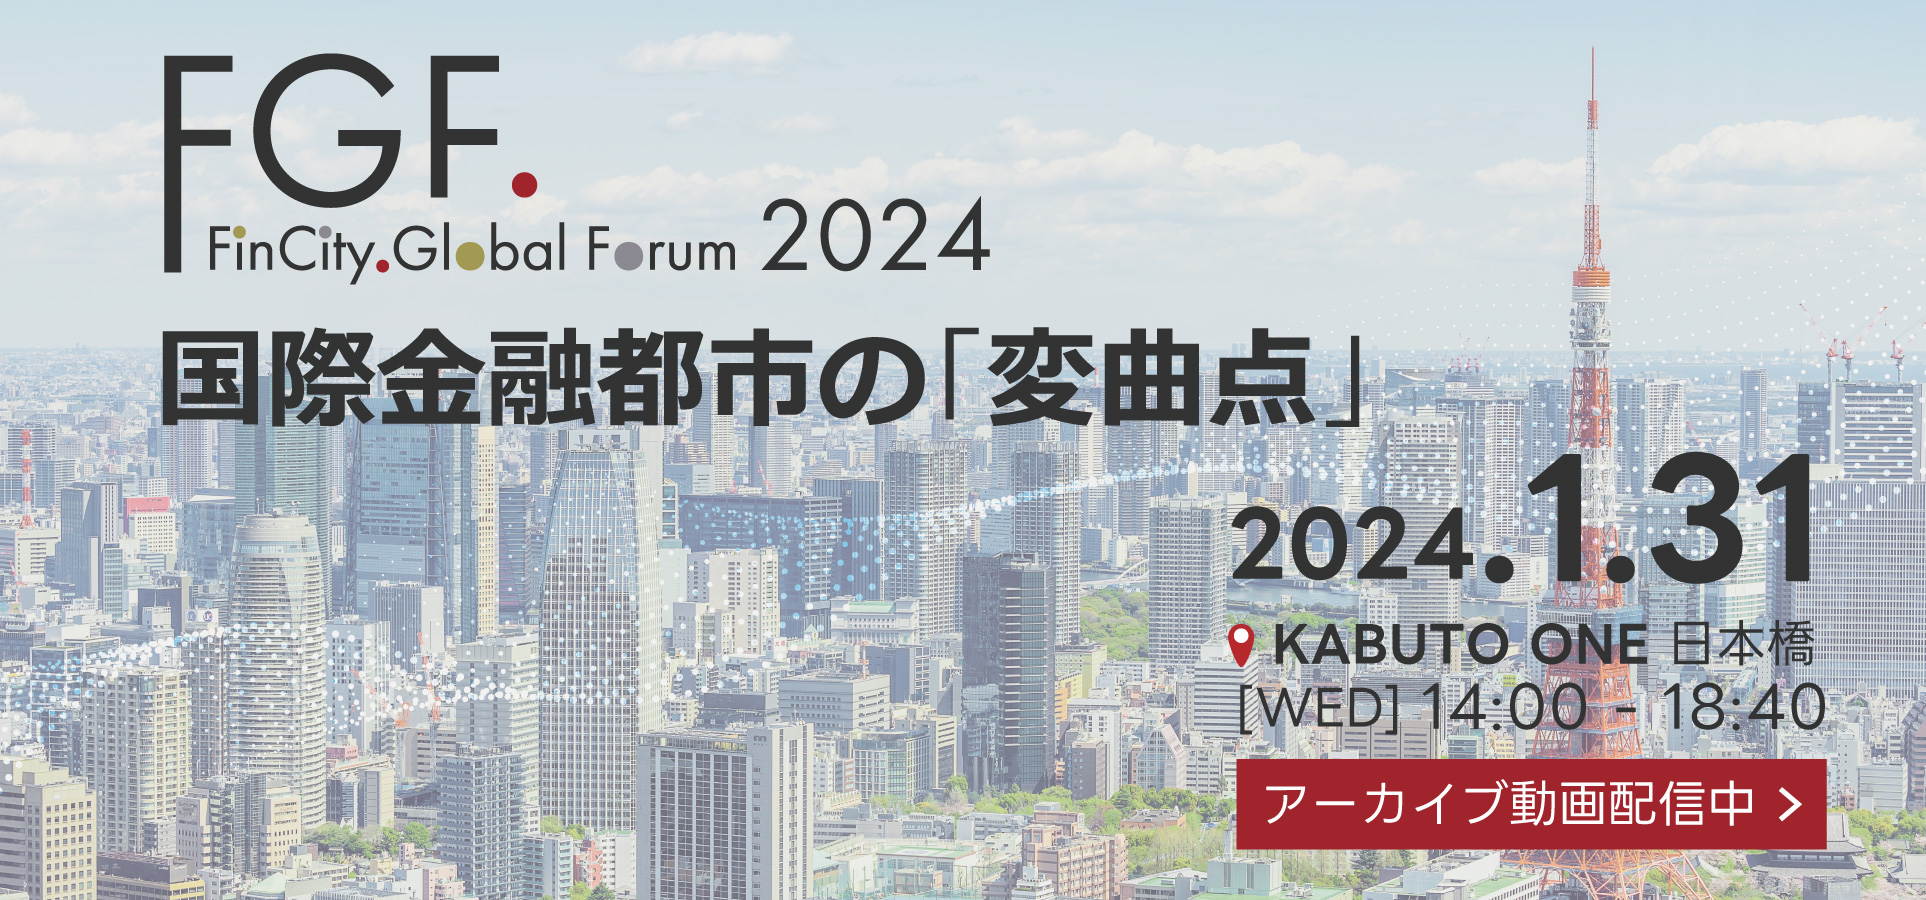 【2024年1月31日(水)開催】国際金融都市としてインベストメントチェーンの高度化に特化した議論を推進します。東京の金融市場としての魅力を高め、世界トップクラスの国際金融都市とするため、その原点でもある「資産運用の高度化」について議論を行います。本年は「Tokyo Asset Management Forum」も同日開催。